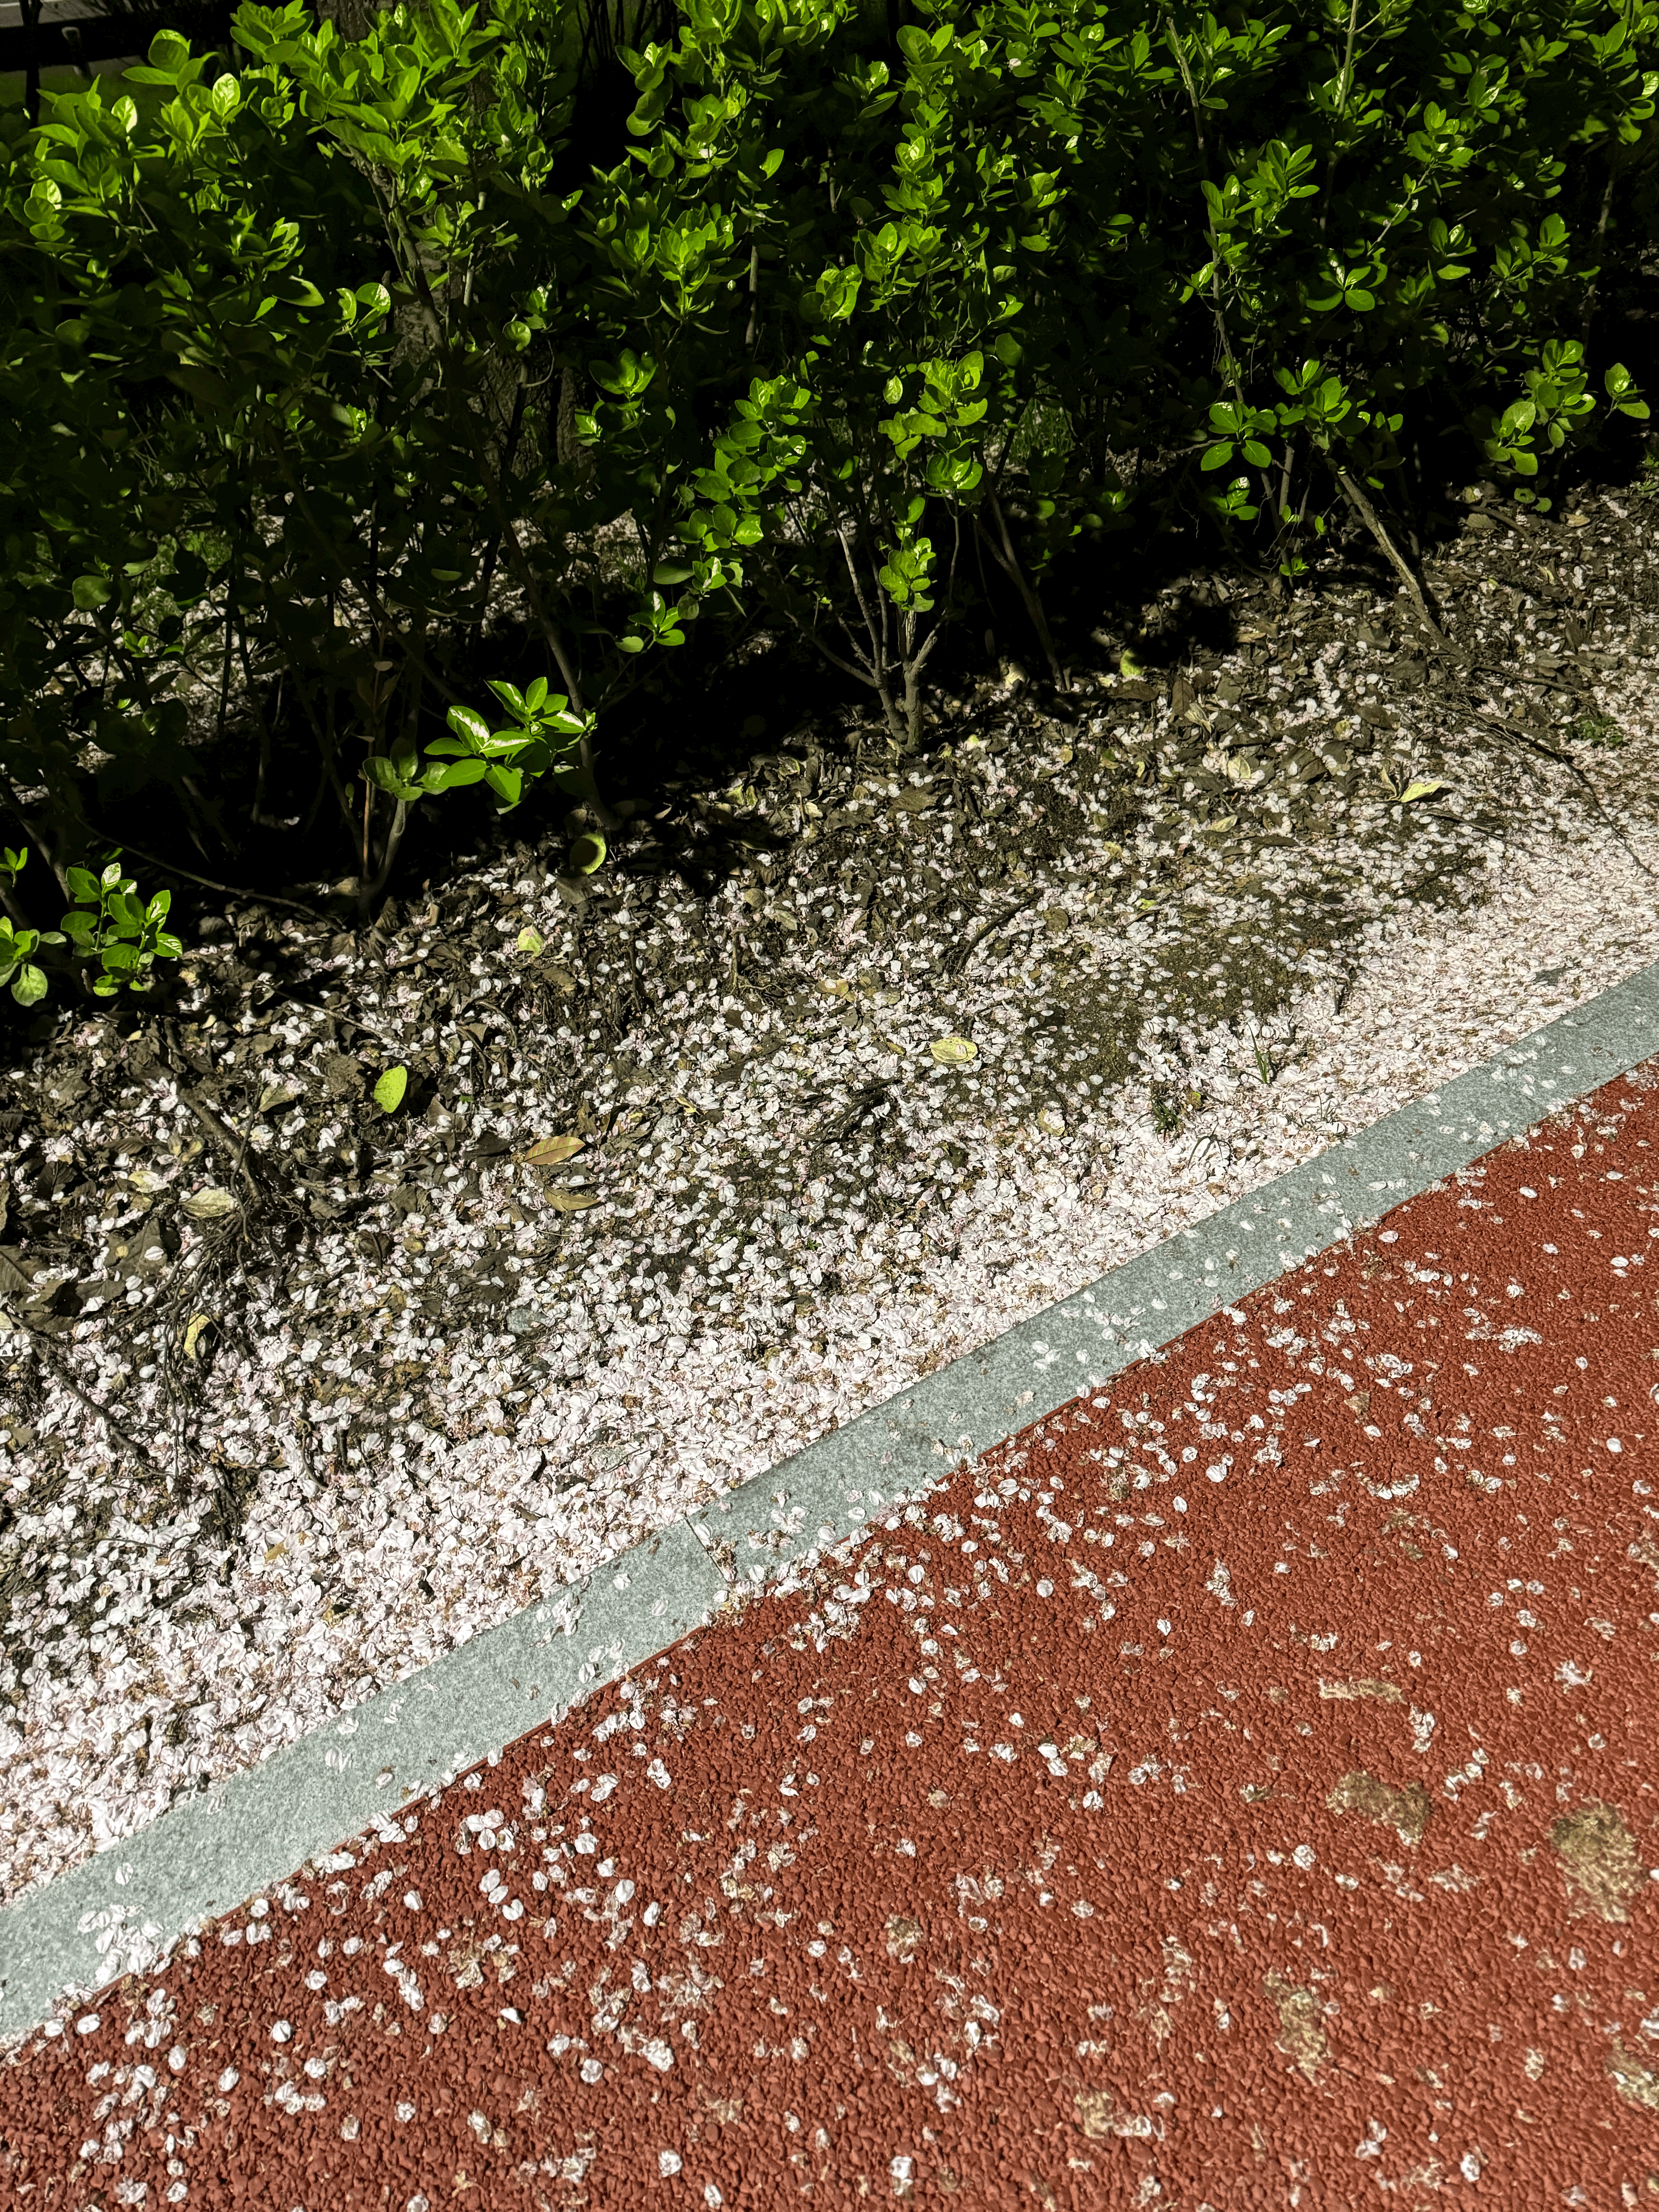 바닥에 많은 벚꽃 잎이 떨어져 있다.